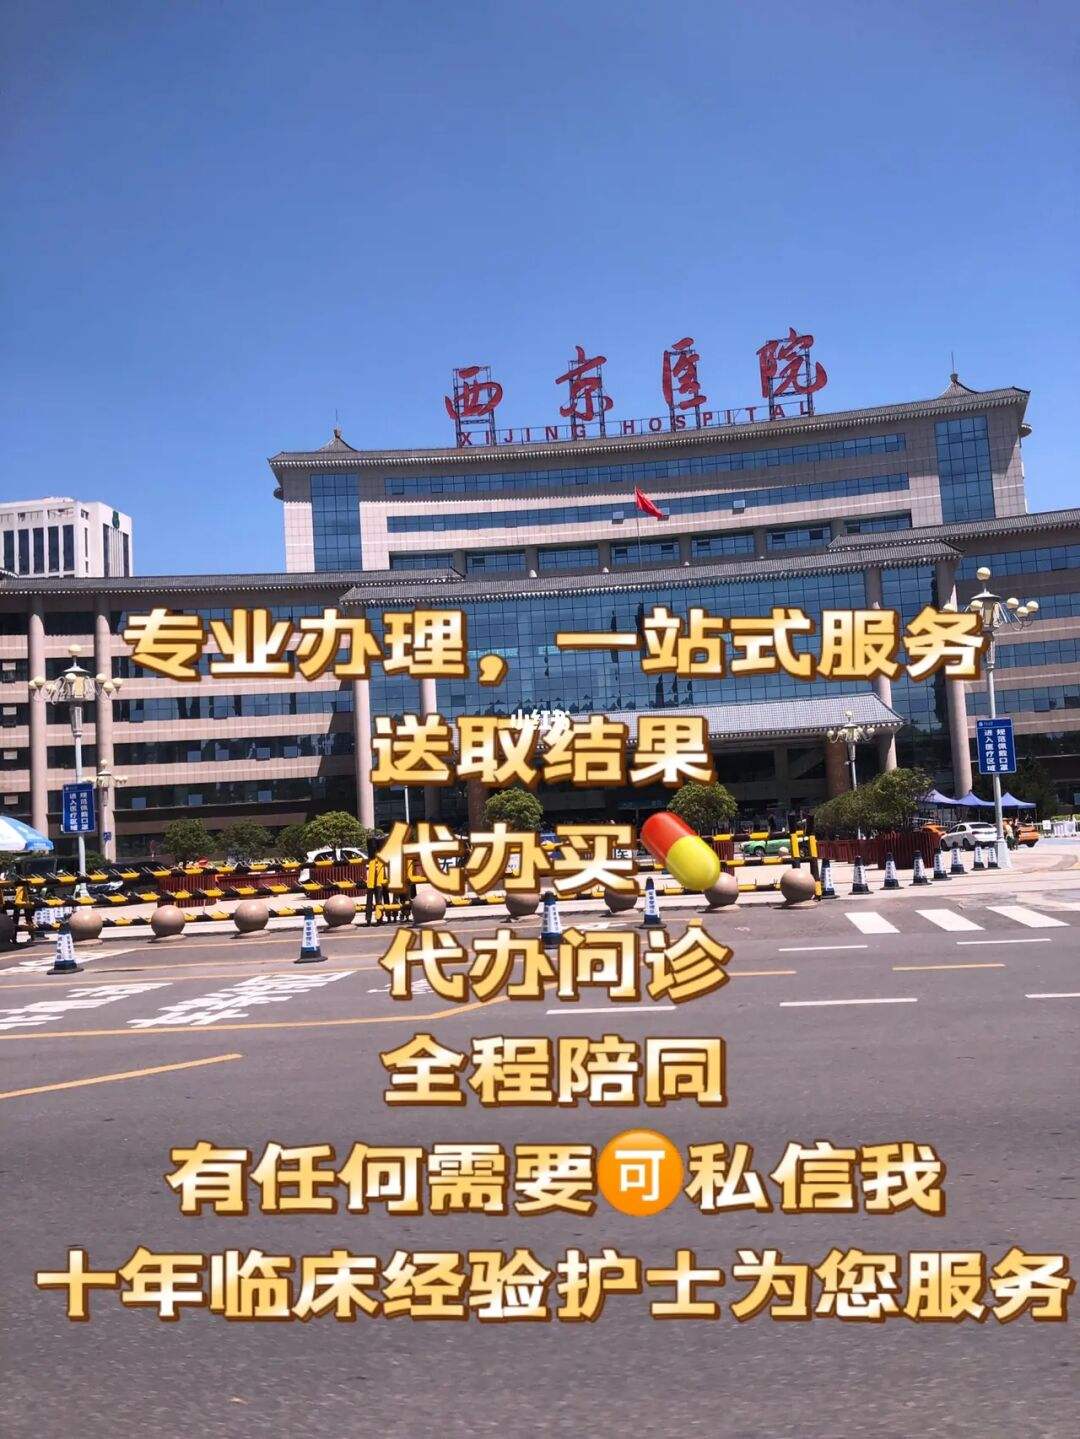 包含广州医科大学附属口腔医院医院跑腿陪诊挂号，一条龙快速就医的词条